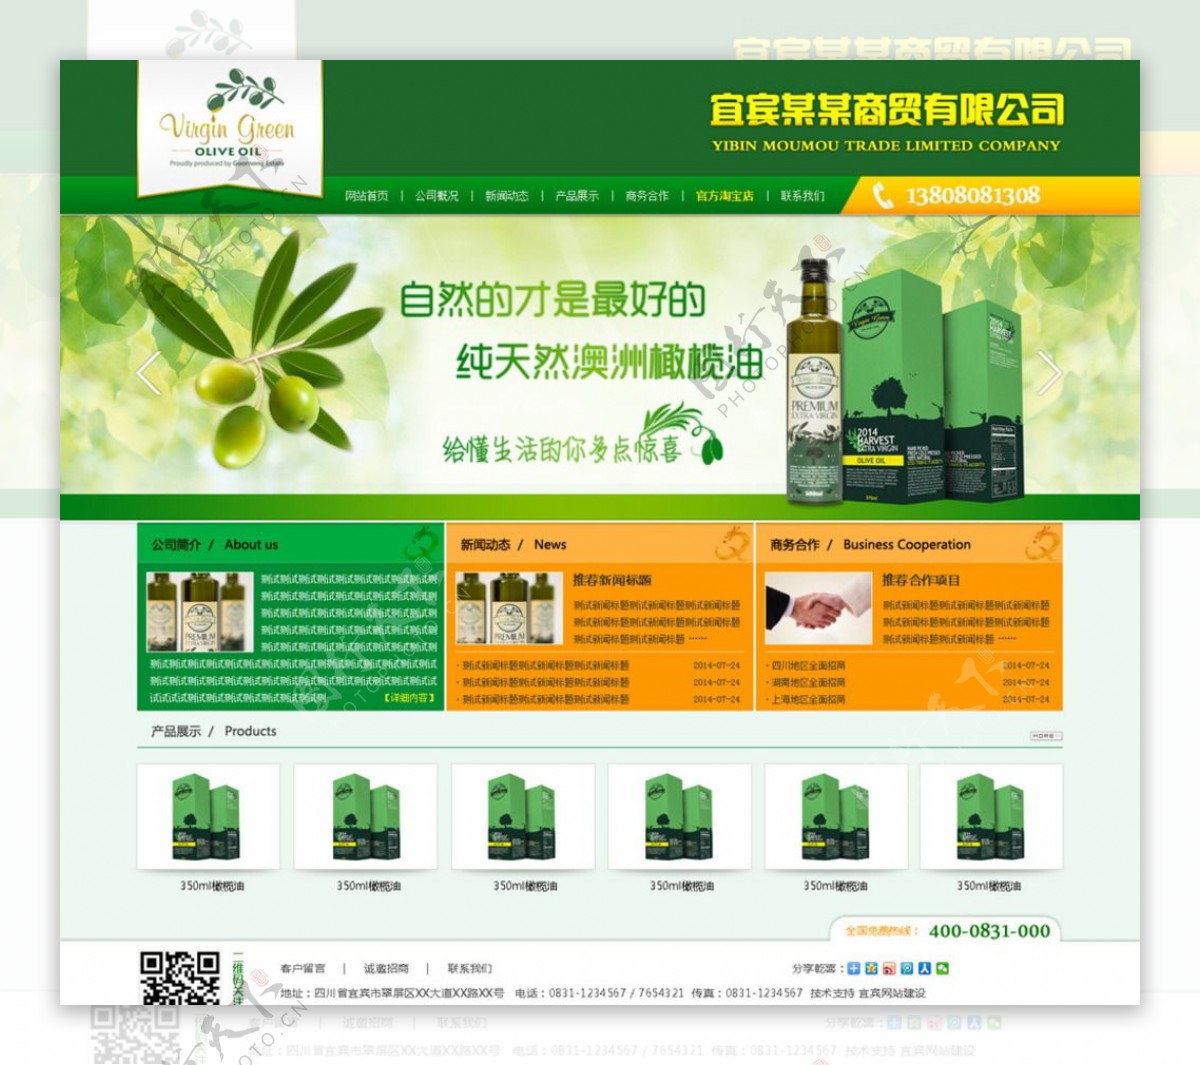 自然生物产品网站界面图片